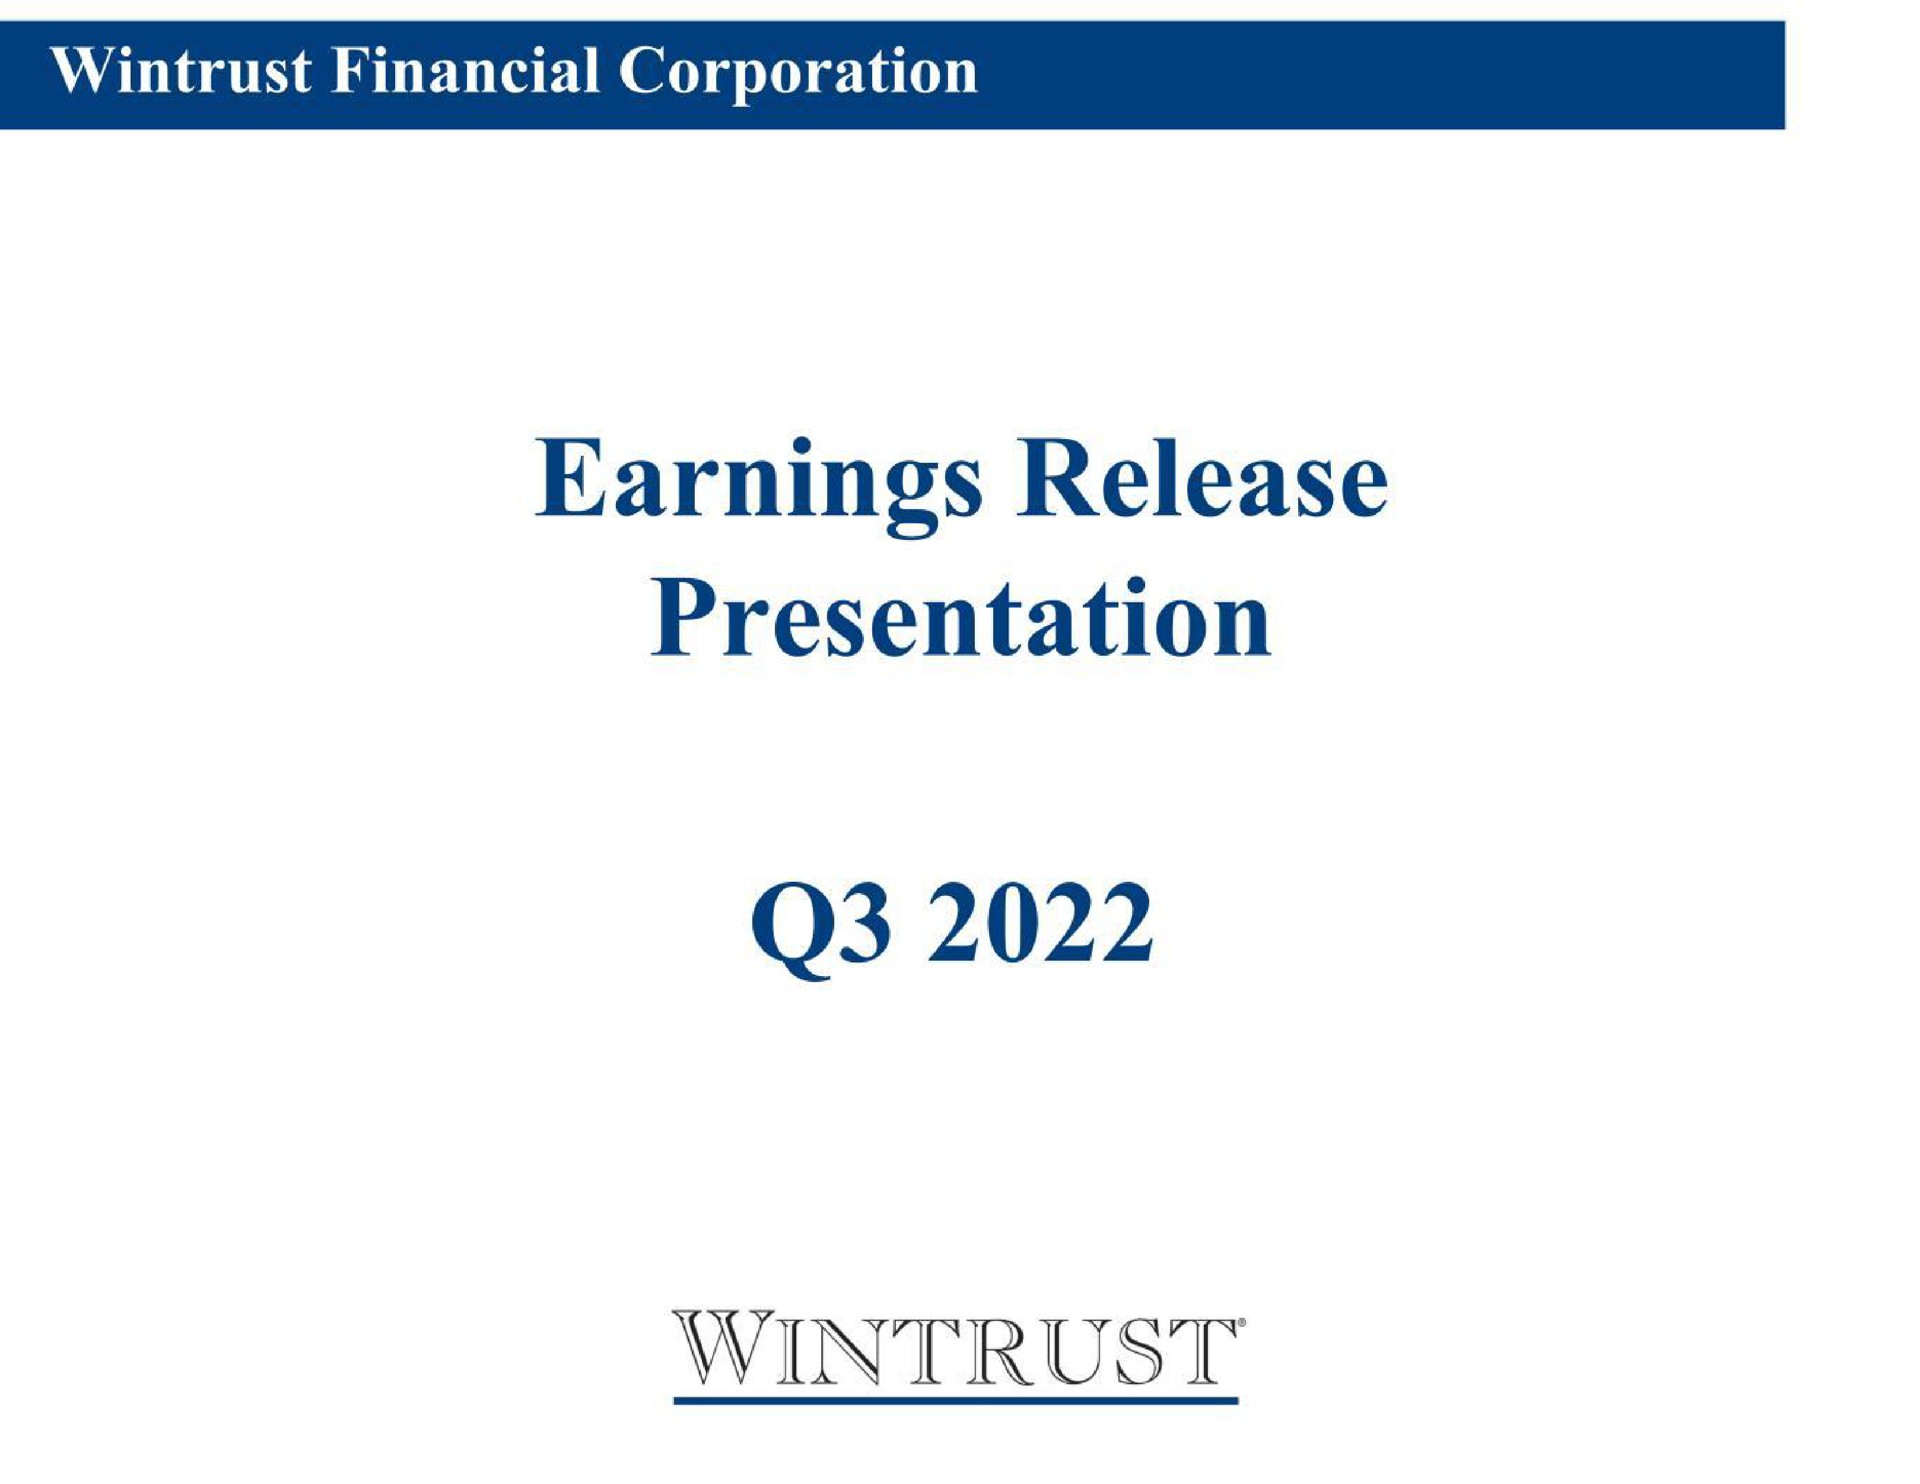 earnings release presentation | Wintrust Financial